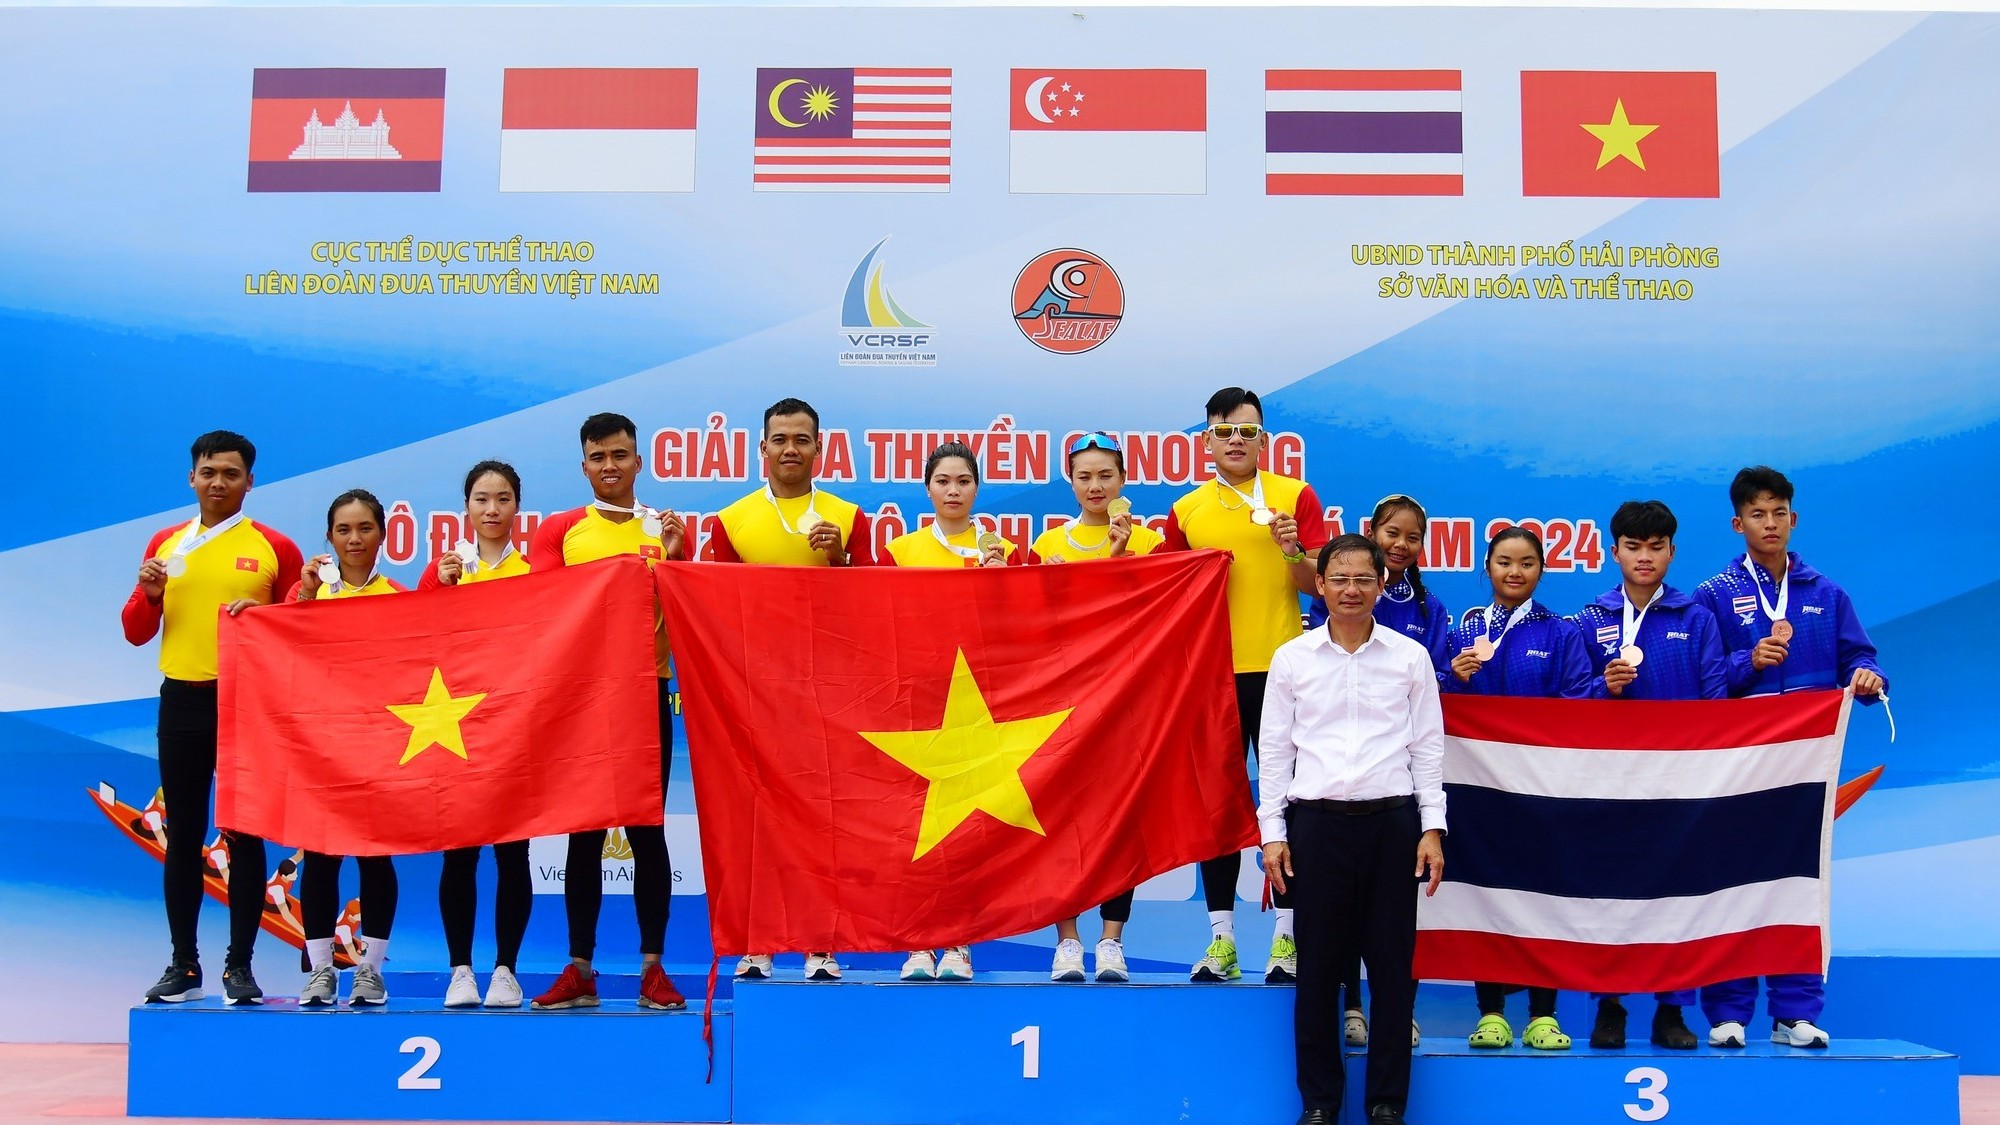 Việt Nam dẫn đầu áp đảo tại Giải Đua thuyền Canoe vô địch U19, U23 và vô địch Đông Nam Á